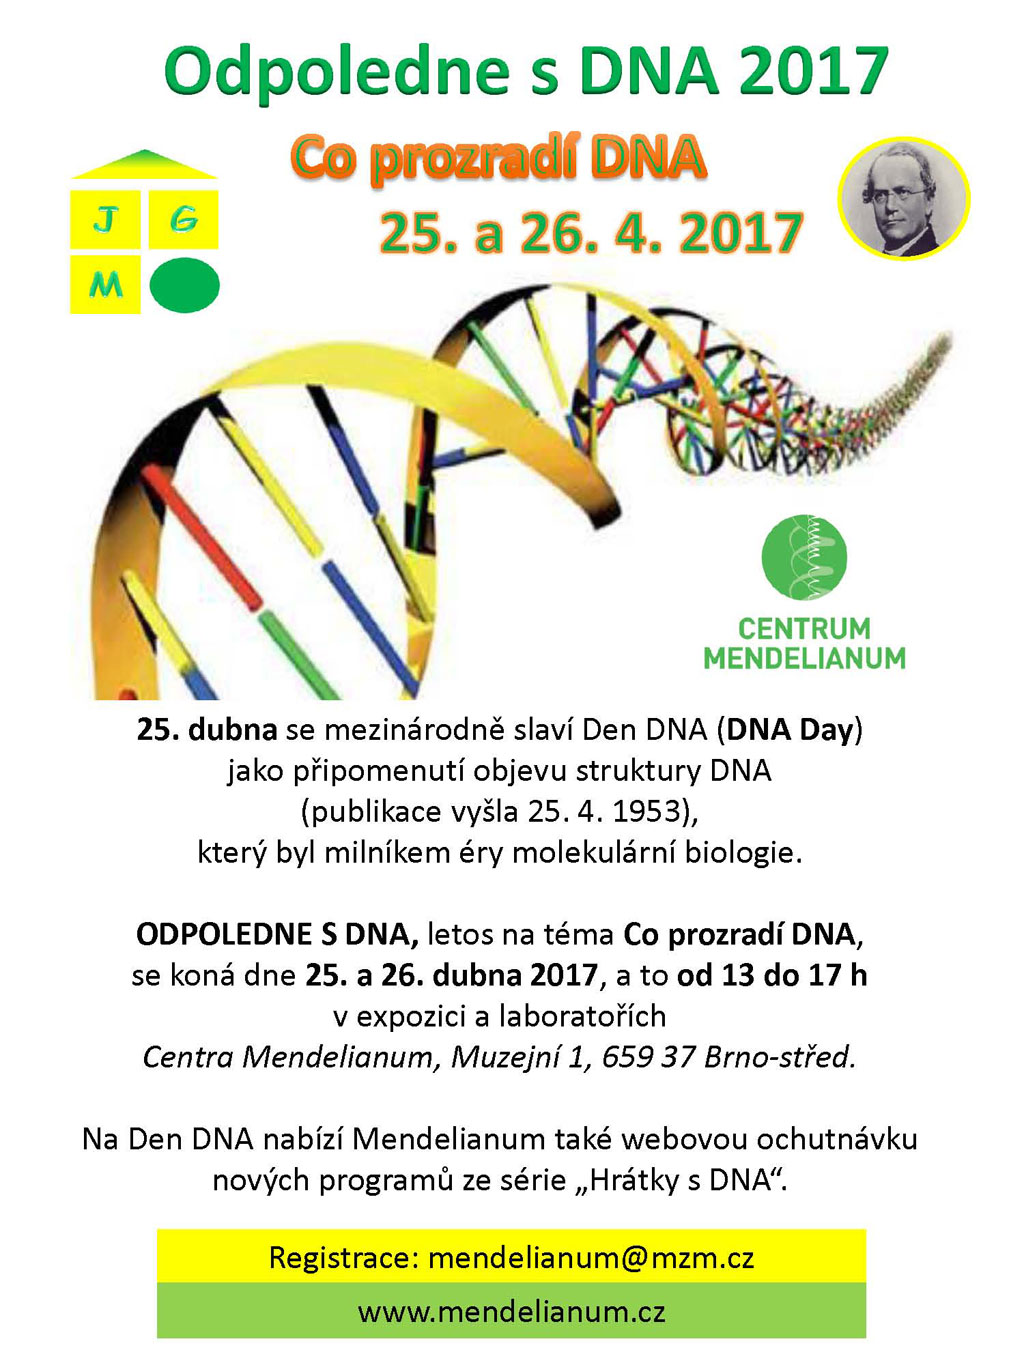 Odpo DNA2017 pozvanka web